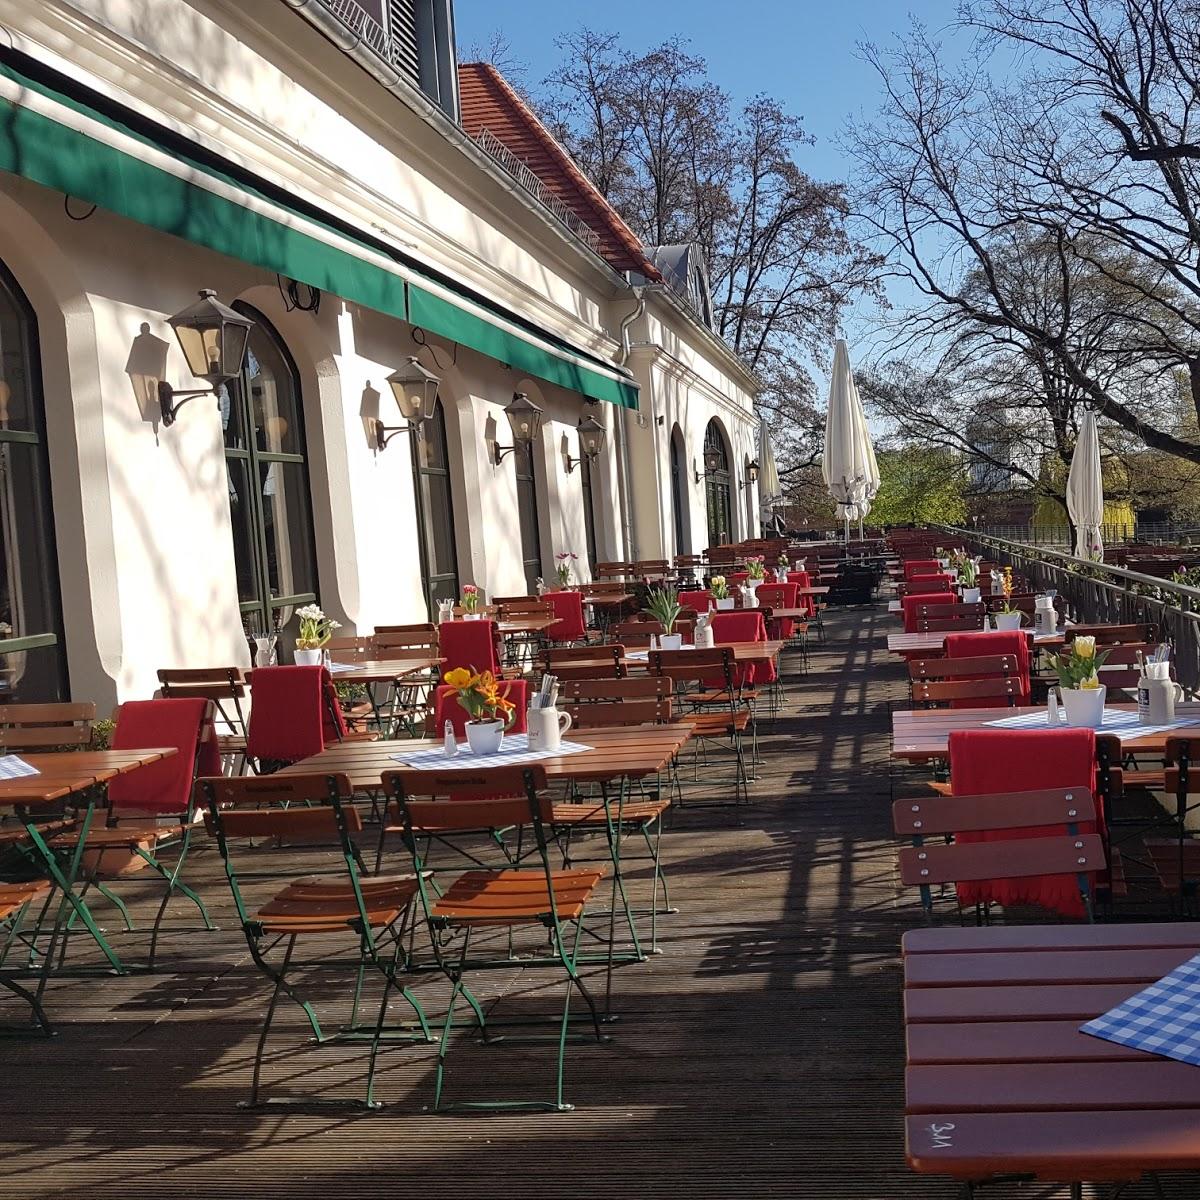 Restaurant "Zollpackhof" in  Berlin